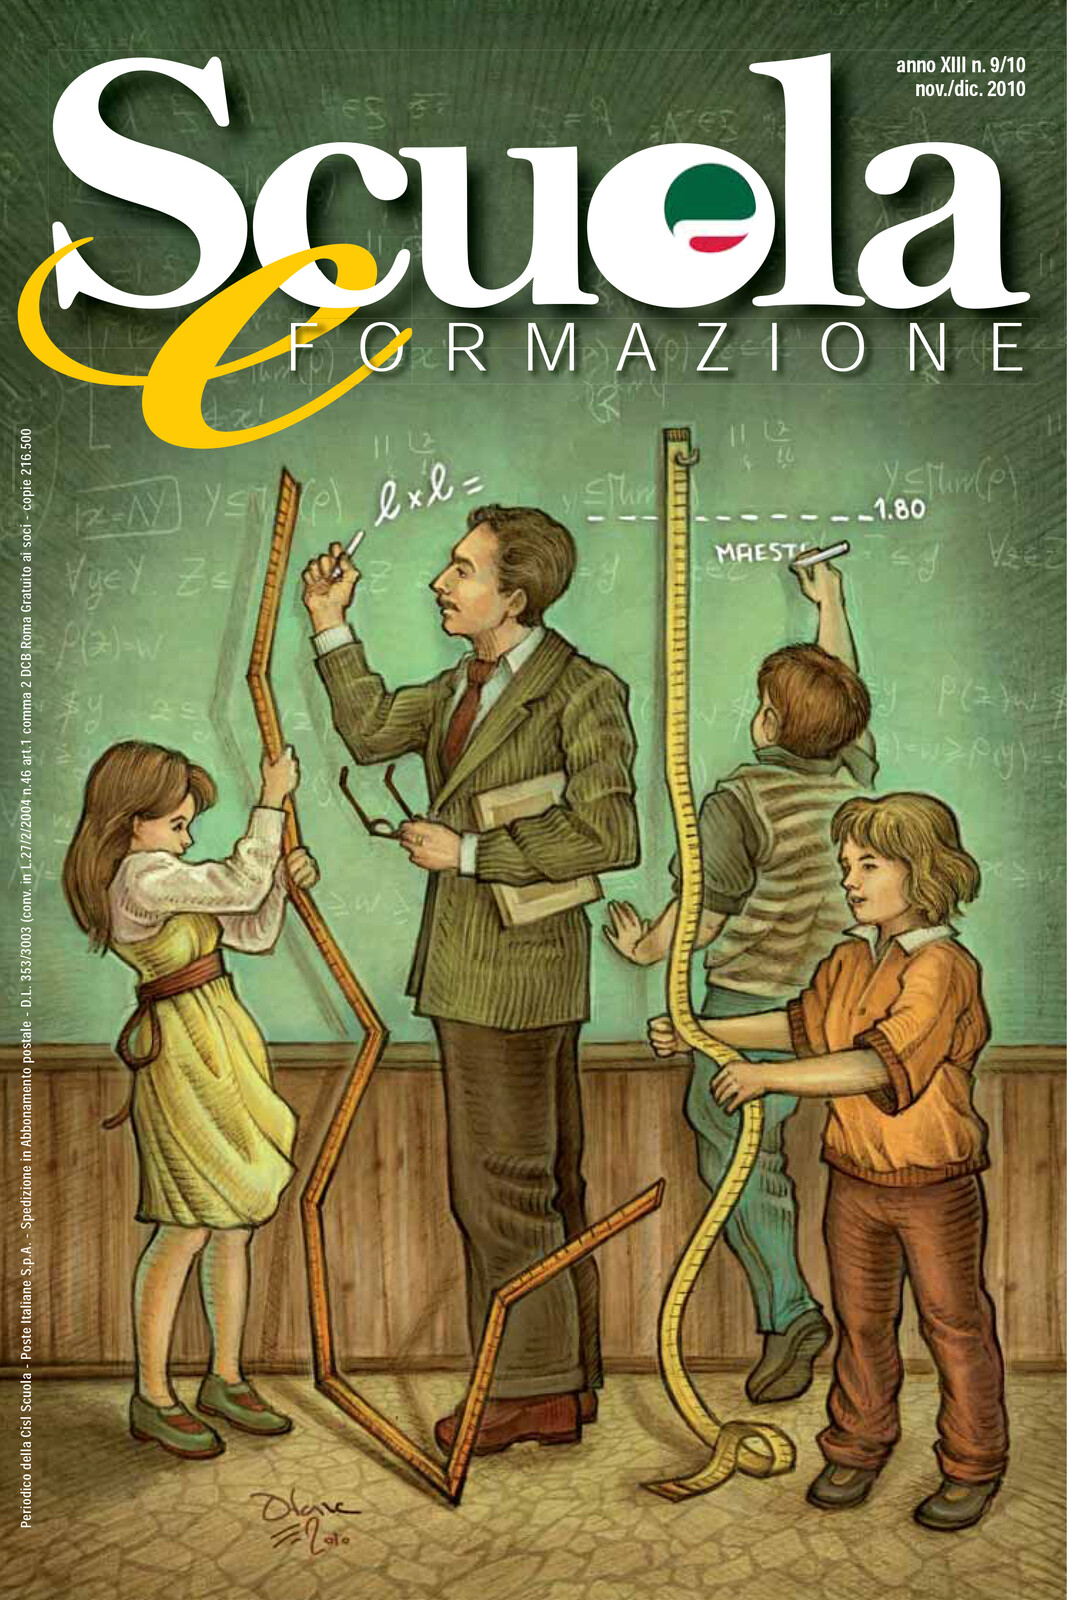 The cover with title and graphics elements.
- GRAFICA E IMPAGINAZIONE
Gigi Brandazza Graphic Line - Milano